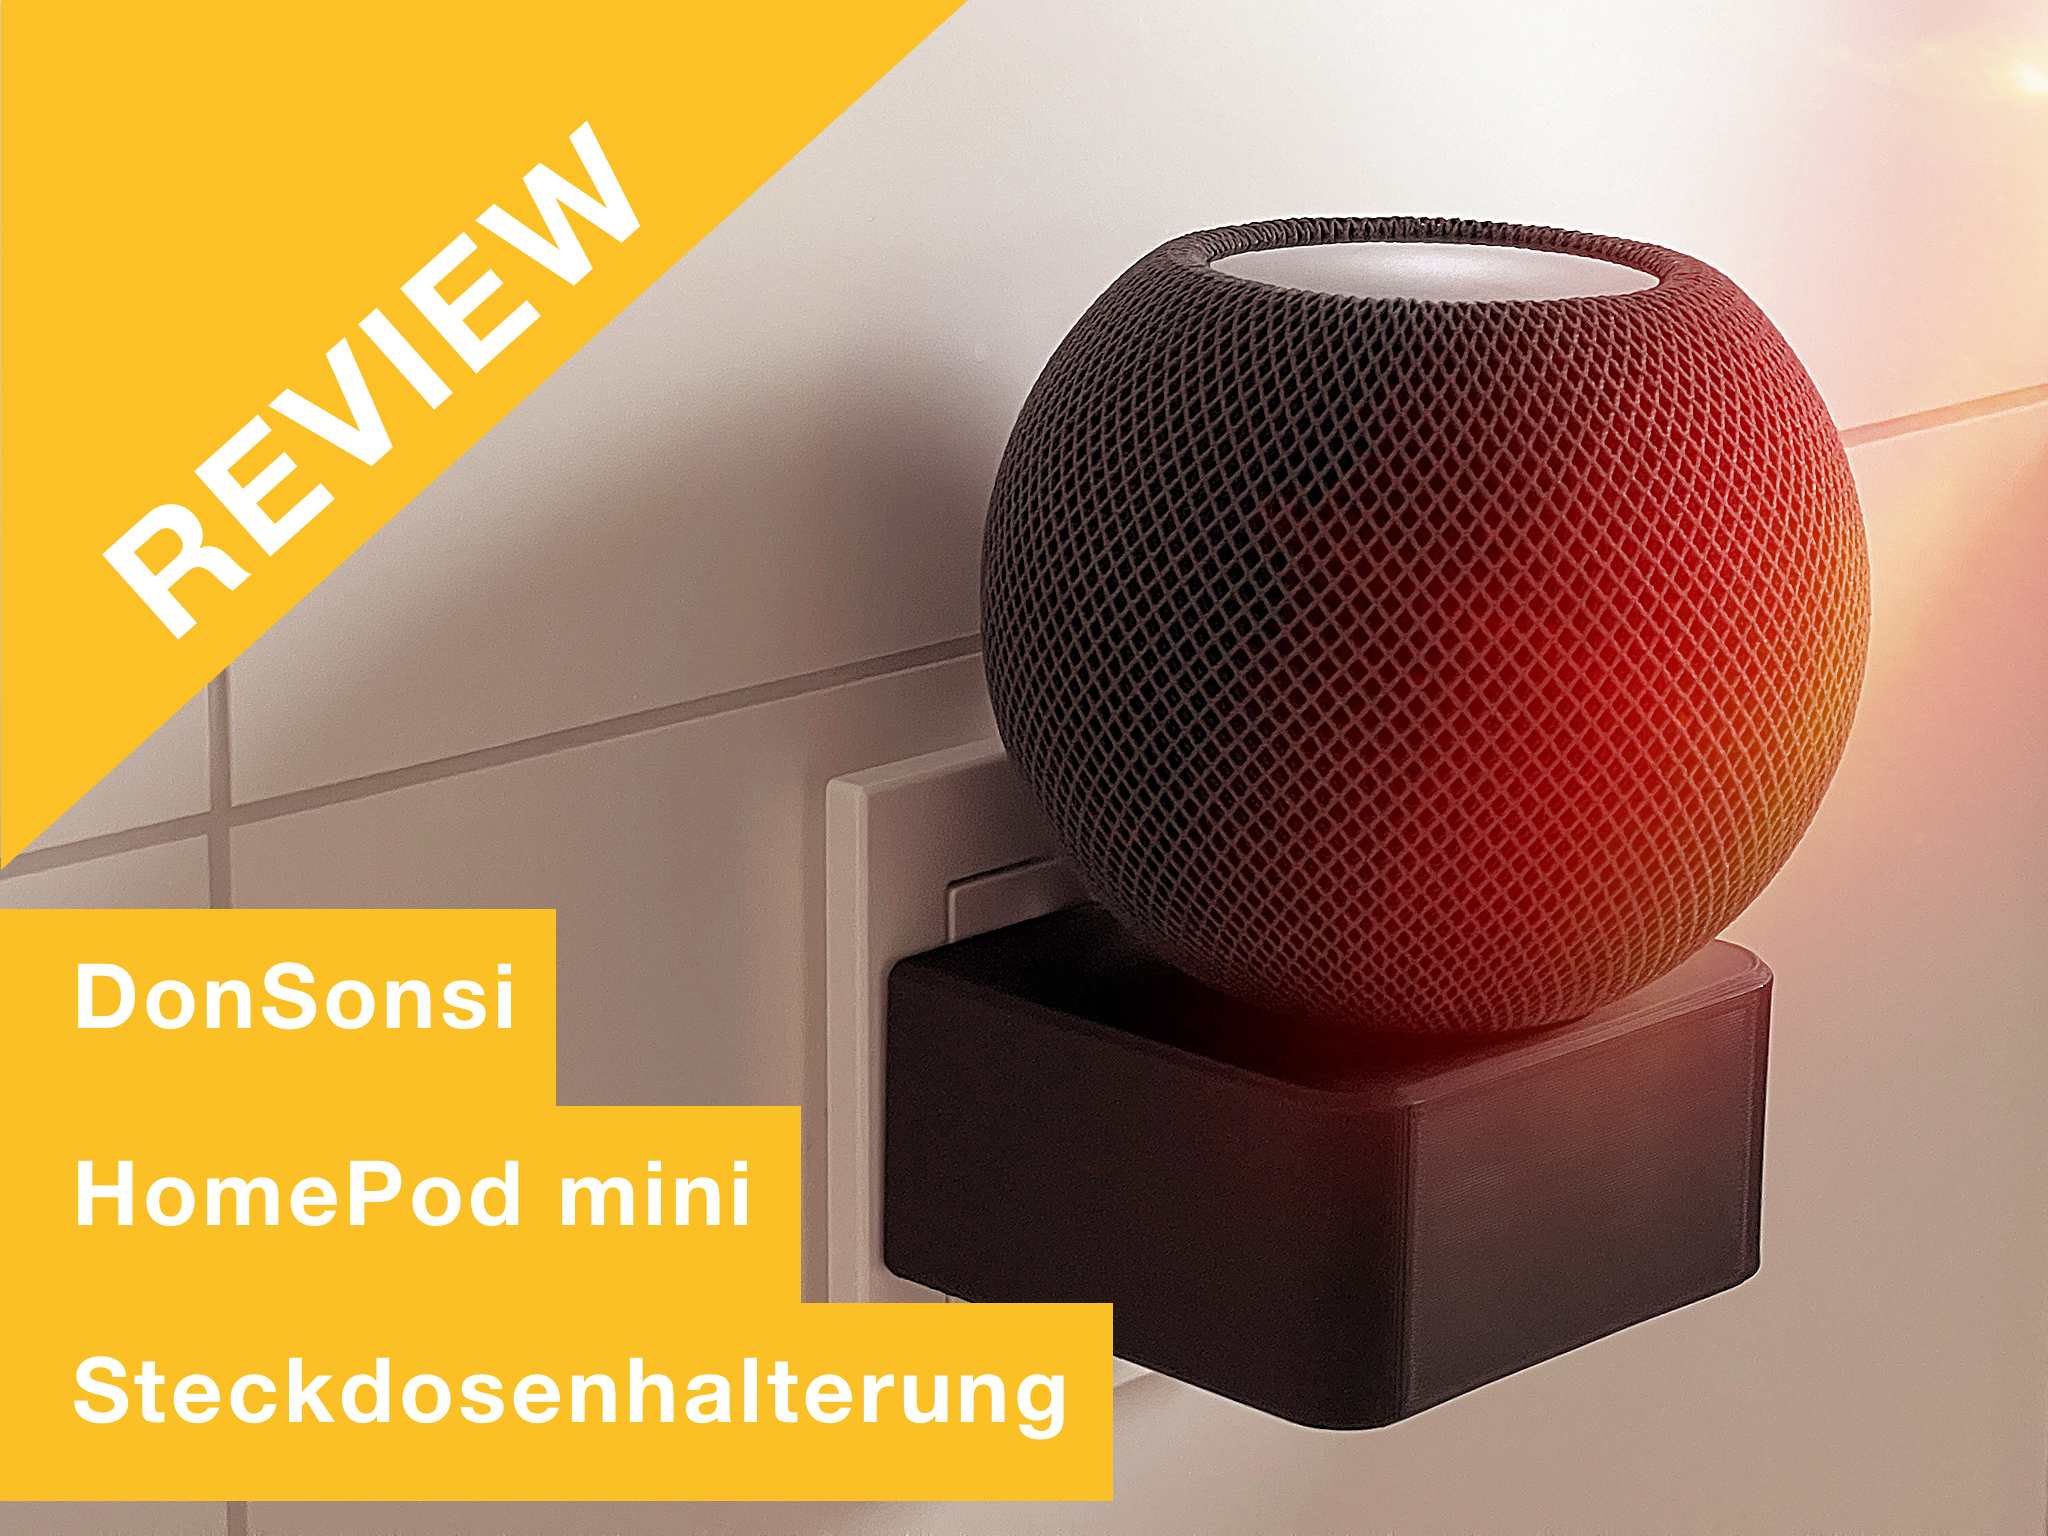 Ausprobiert! Review zu DonSonsi HomePod mini Steckdosen Halterung